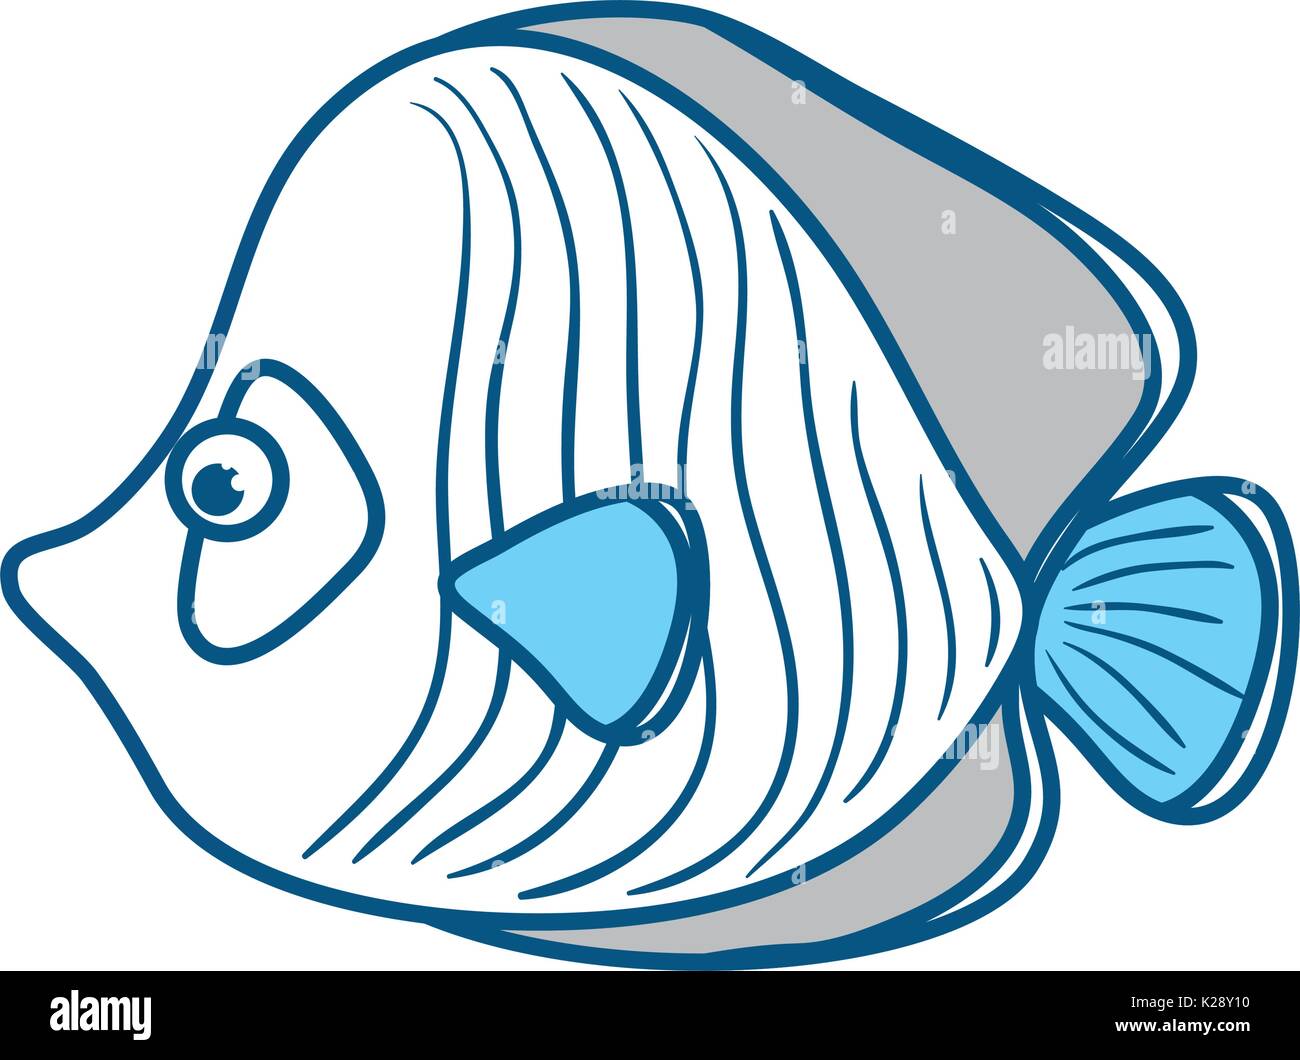 Cute fish cartoon Stock Vector Image & Art - Alamy